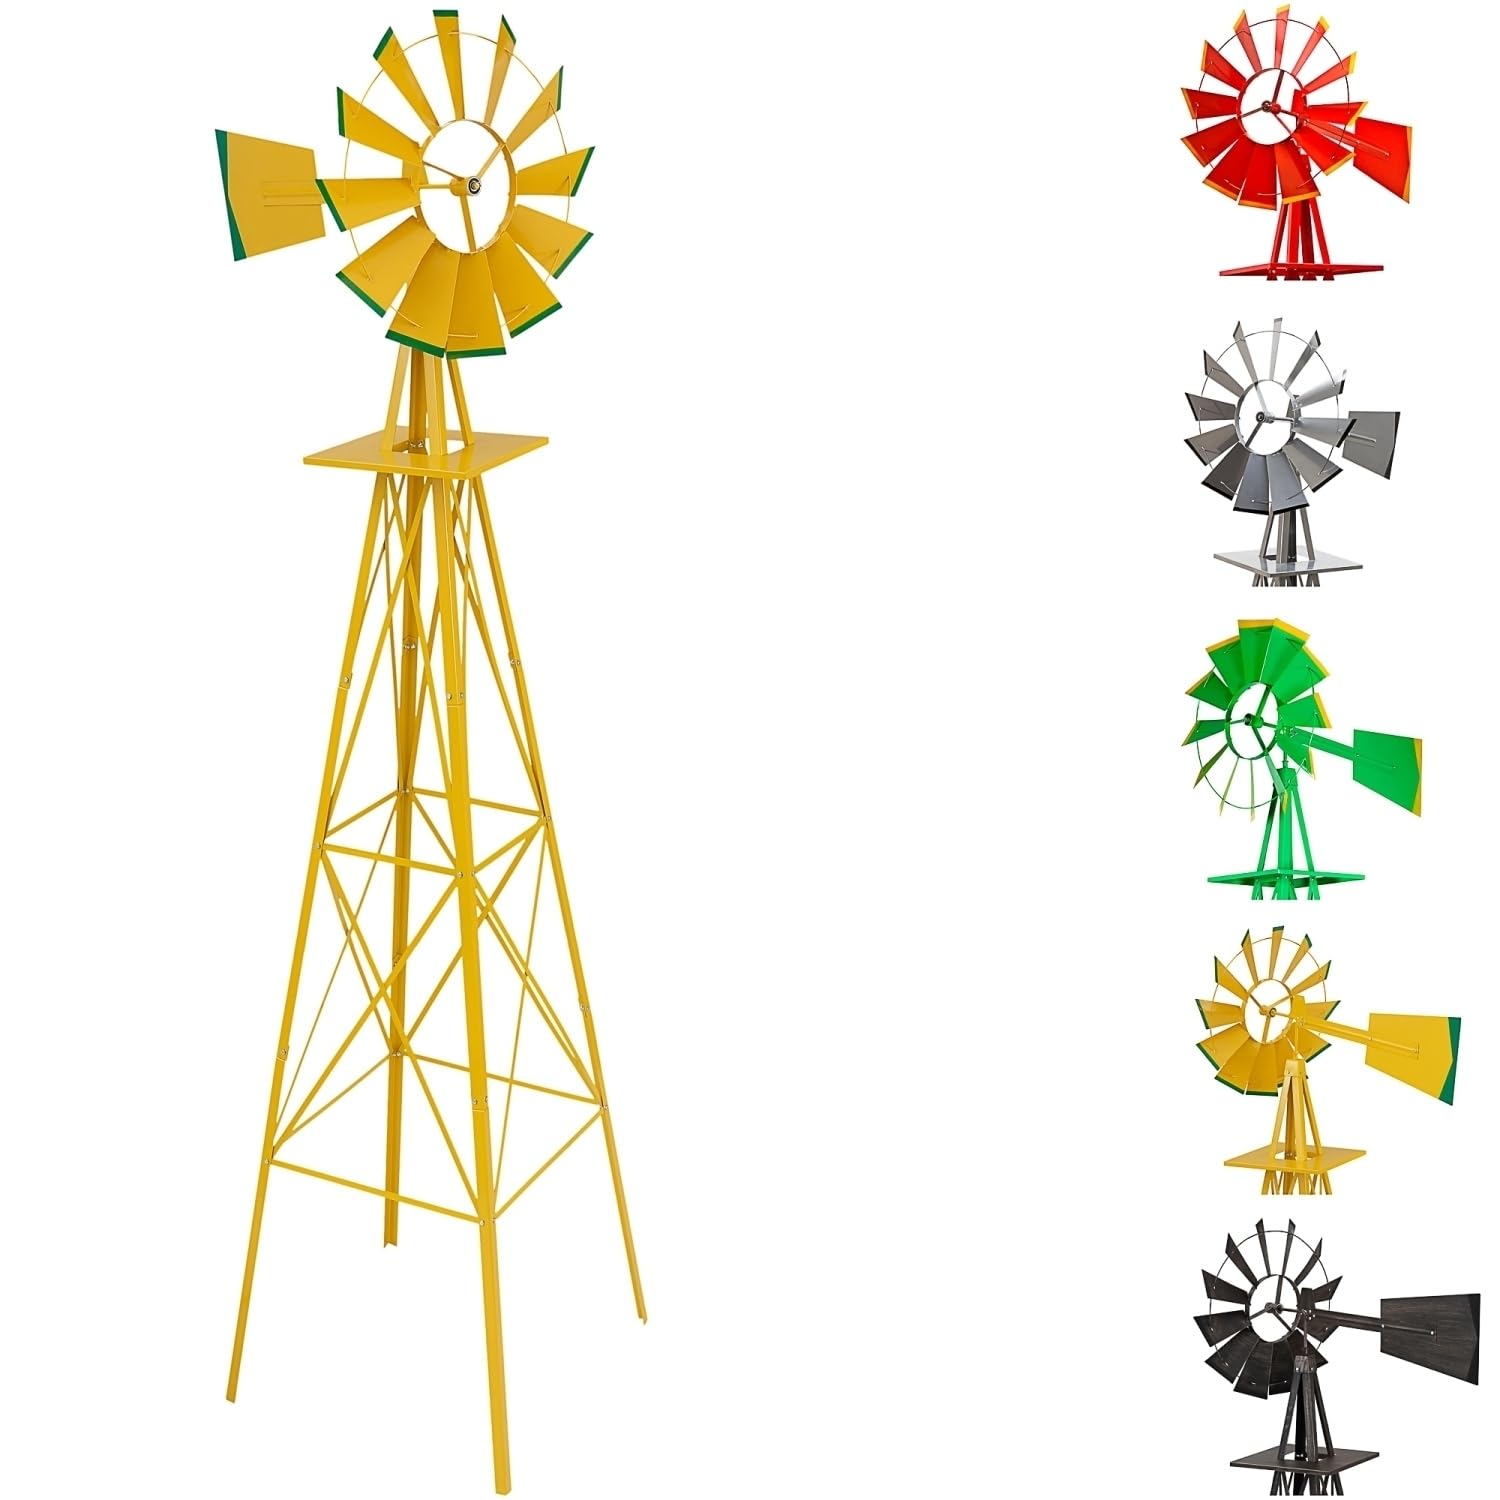 STILISTA Gigantisches Windrad im US-Style aus Stahl, Höhe 245cm, Rotor 55cm, kugelgelagert, in vers. Farben, gelb